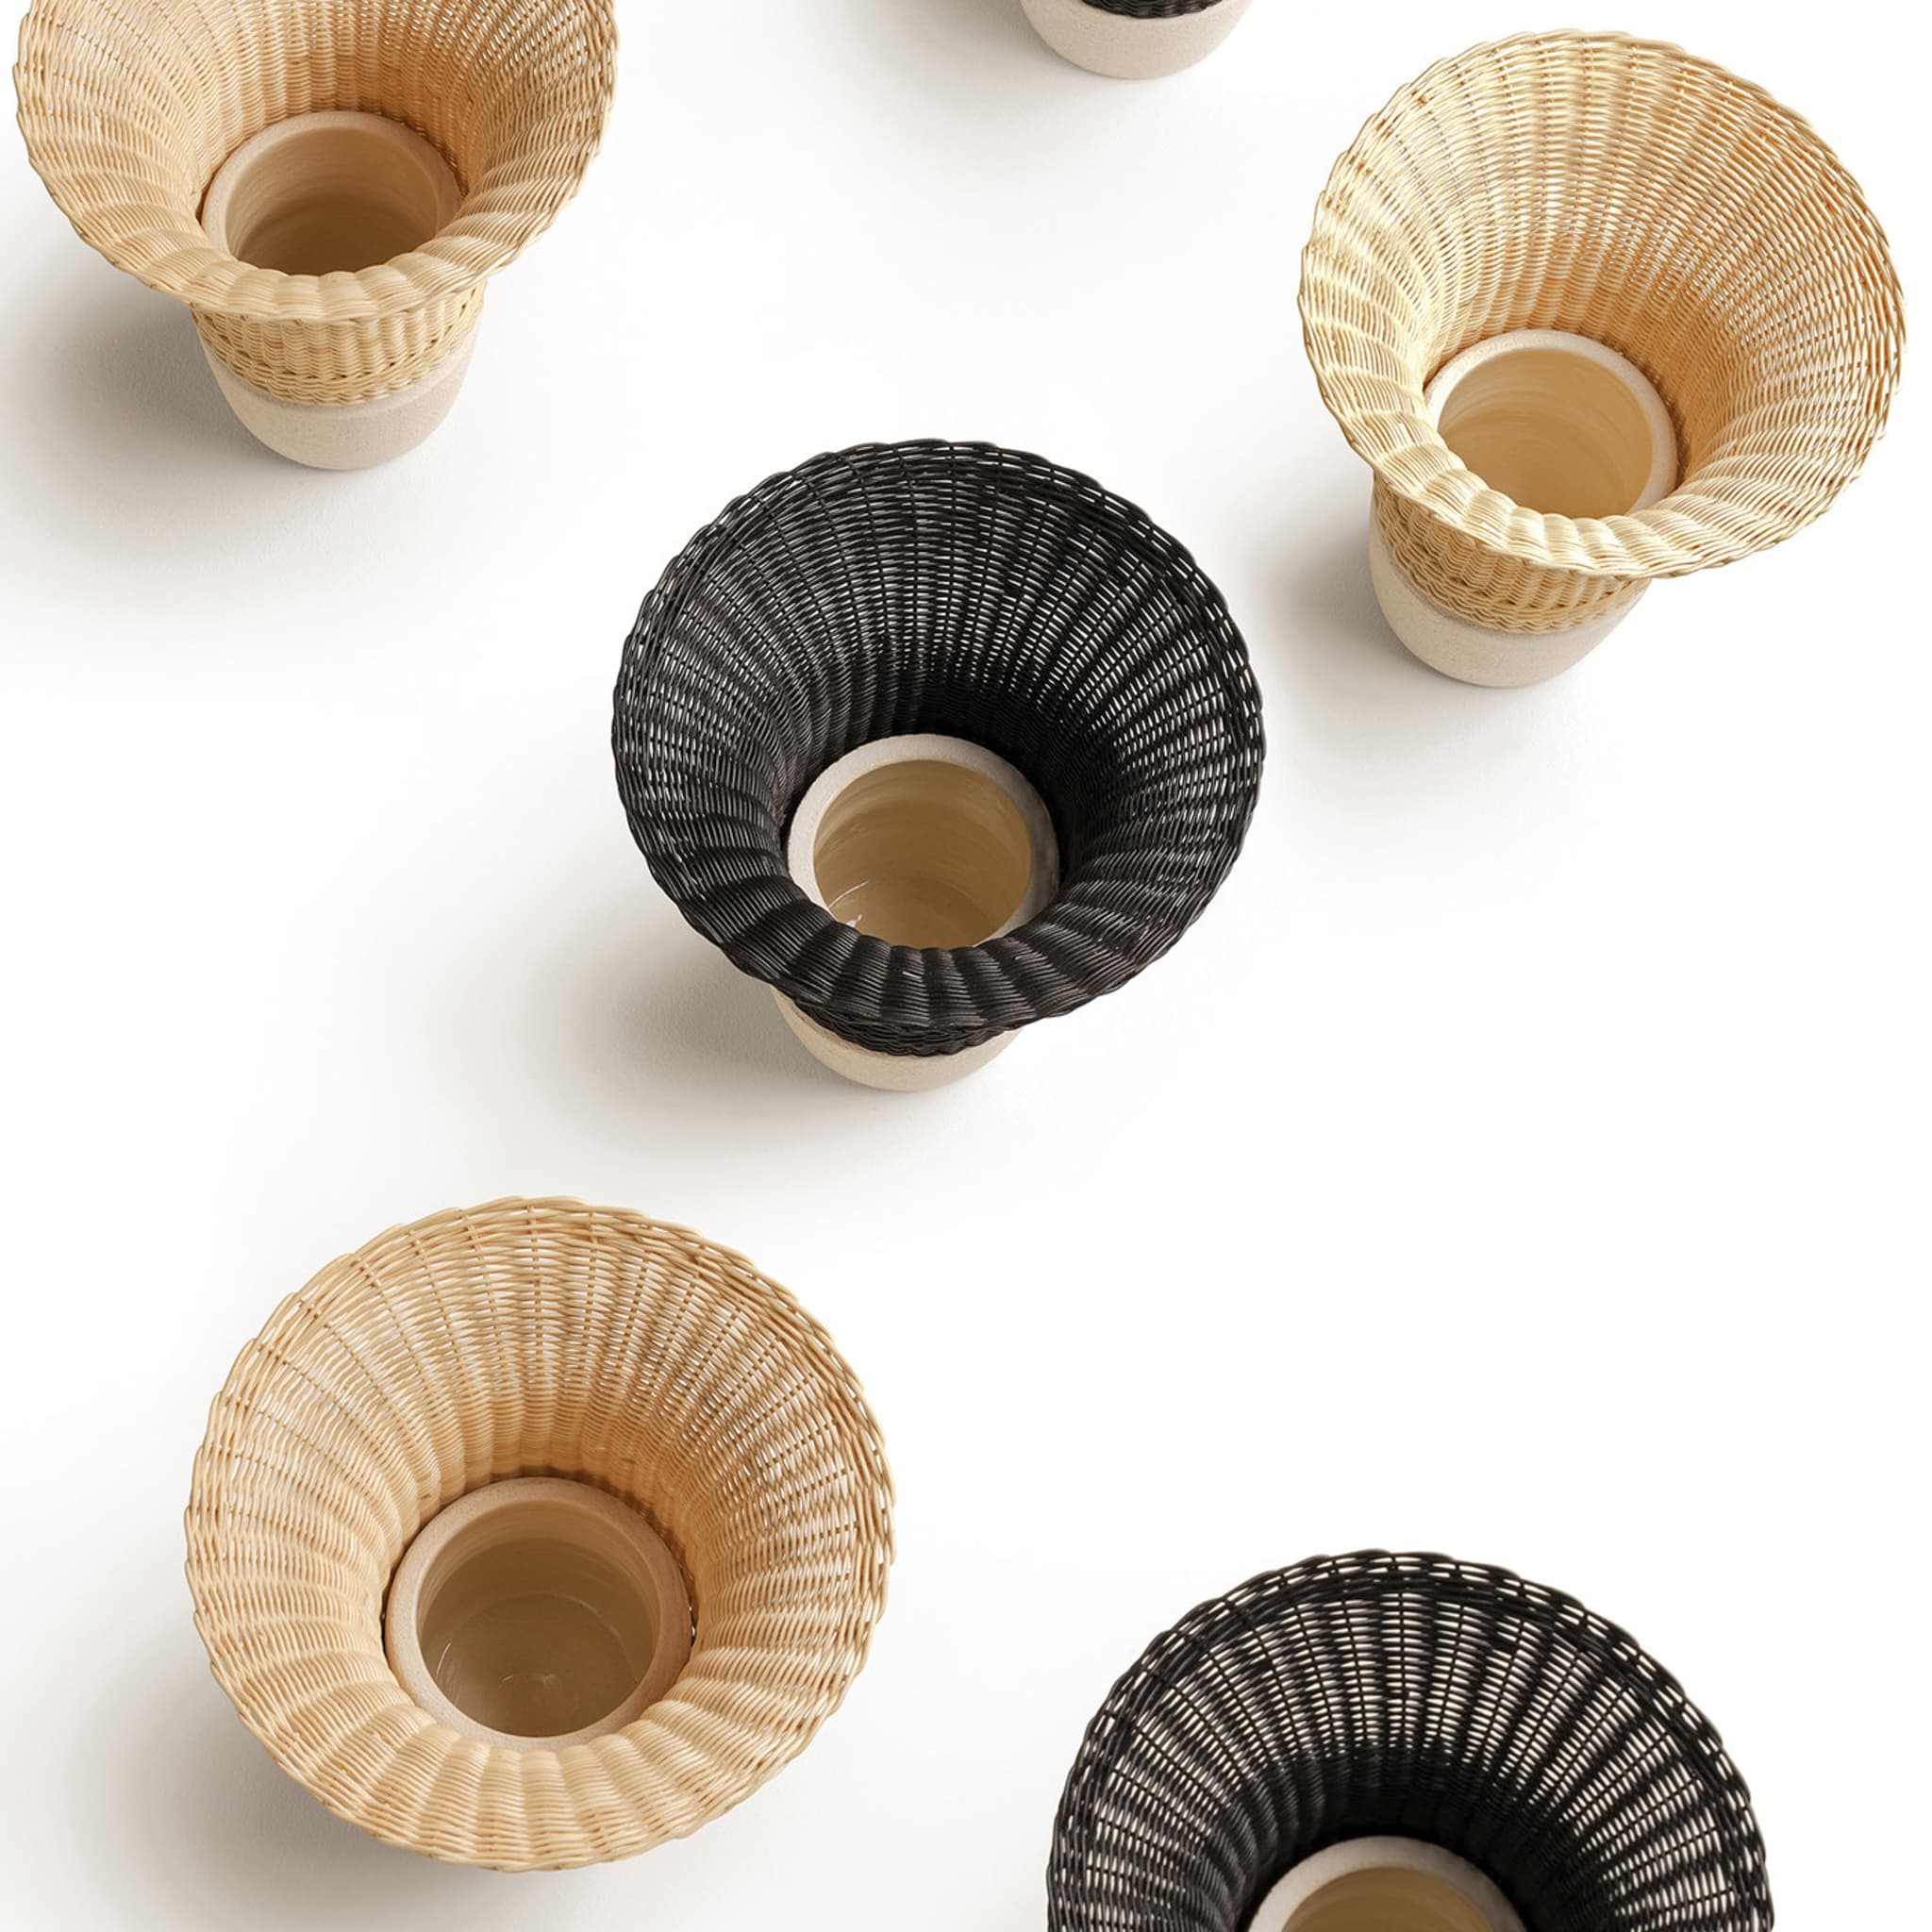 Nodo Wicker Vase by Intreccio Lab - Alternative view 1